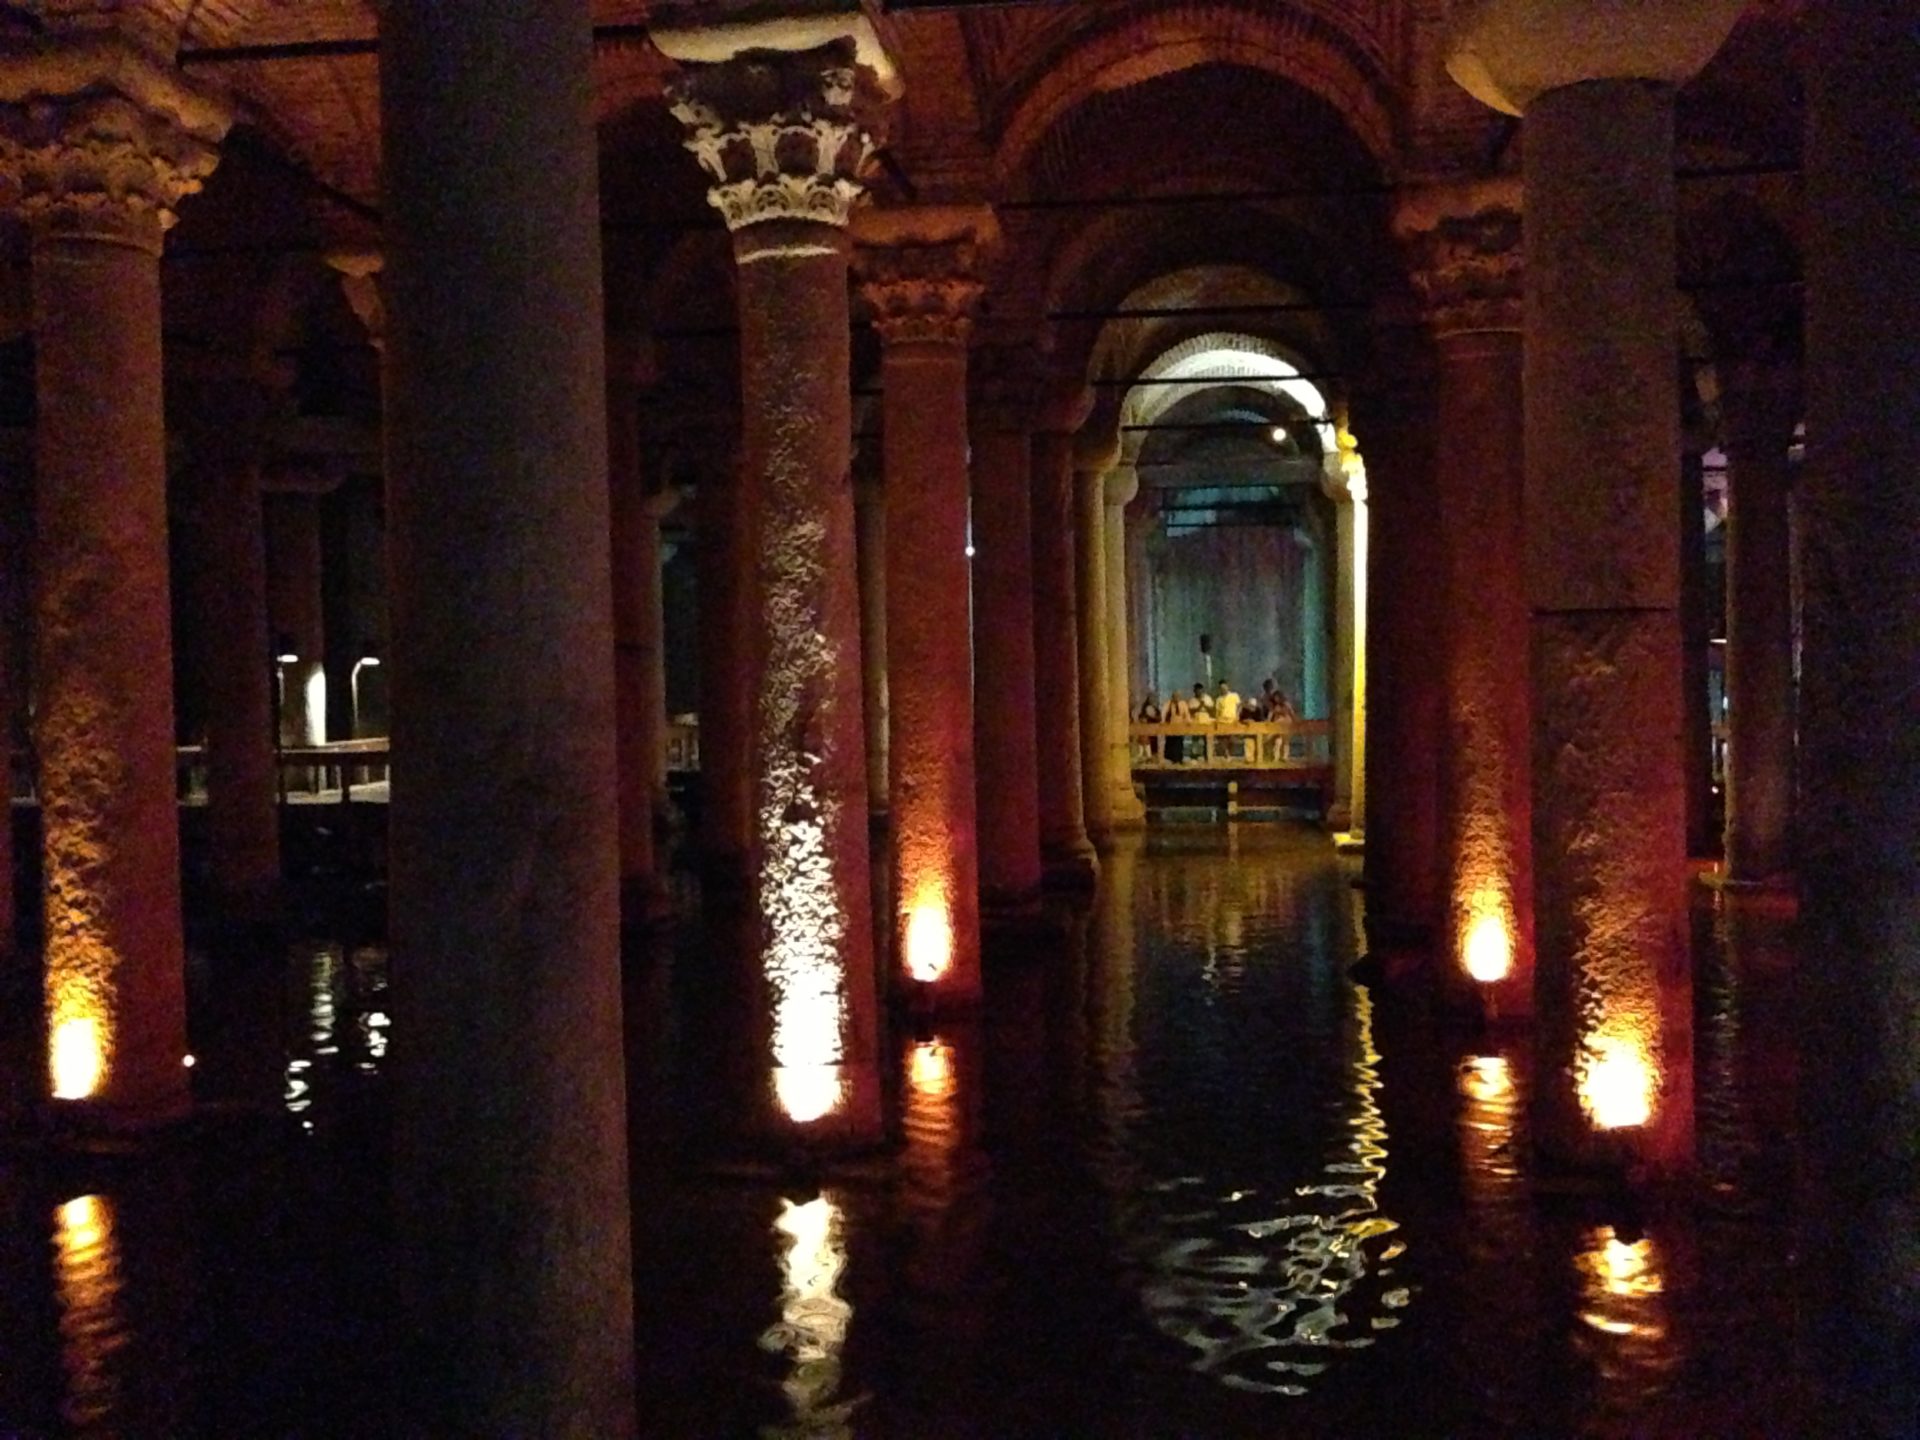 Basilica Cistern Istanbul Turkey